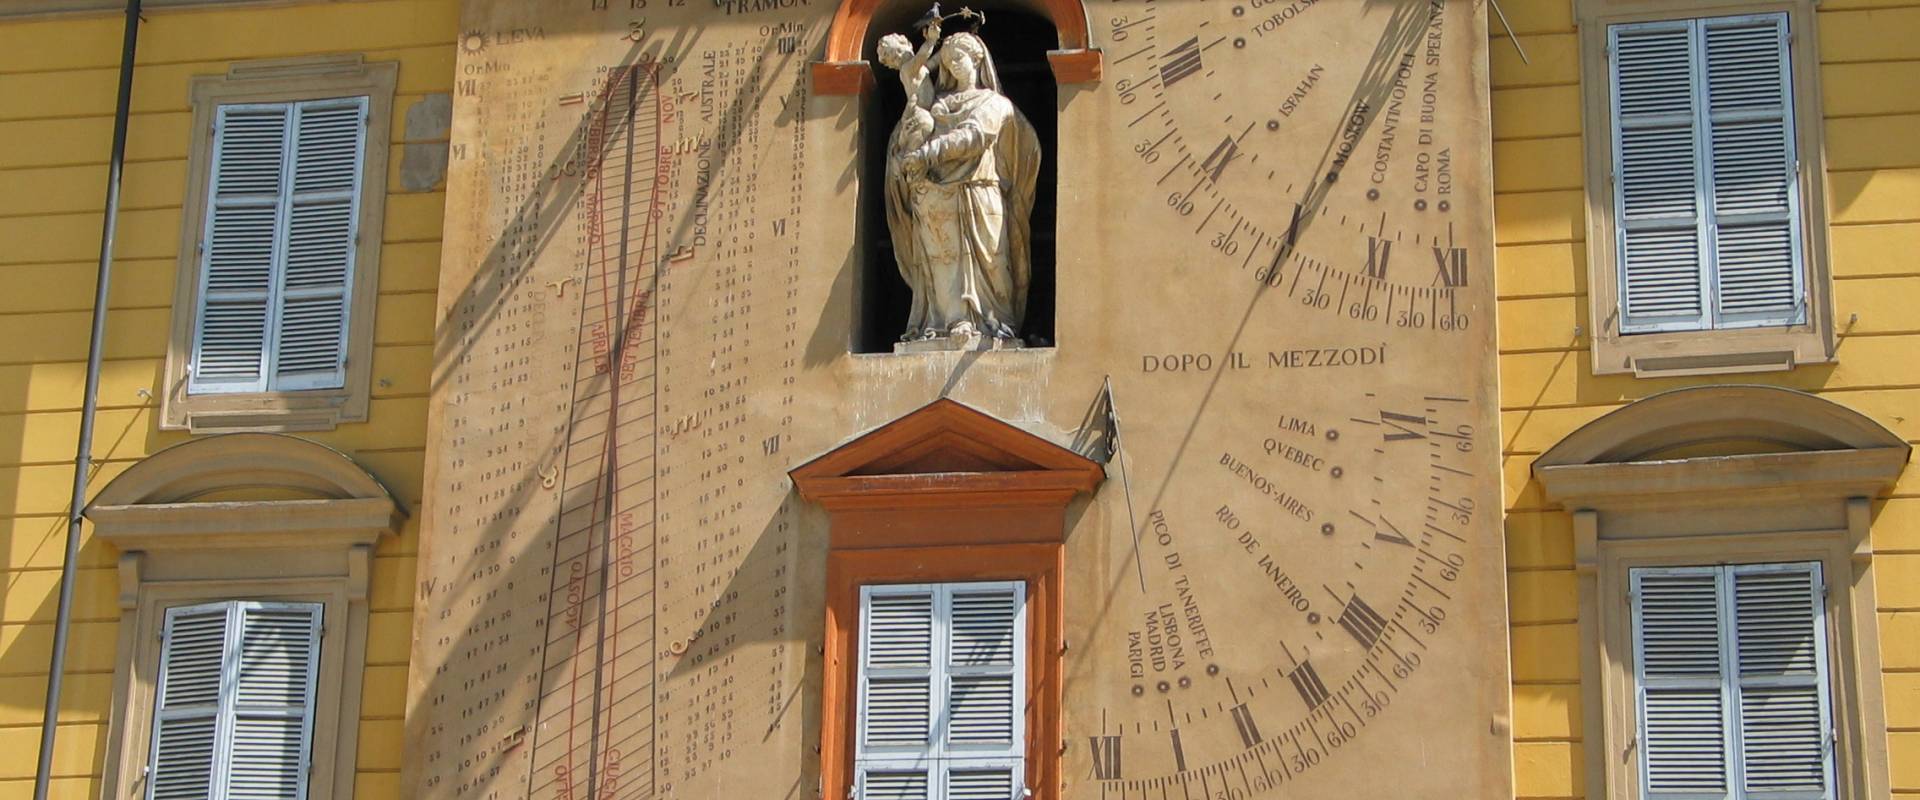 Clessidra del Palazzo del Governatore in Piazza Garibaldi a Parma foto di Carloferrari